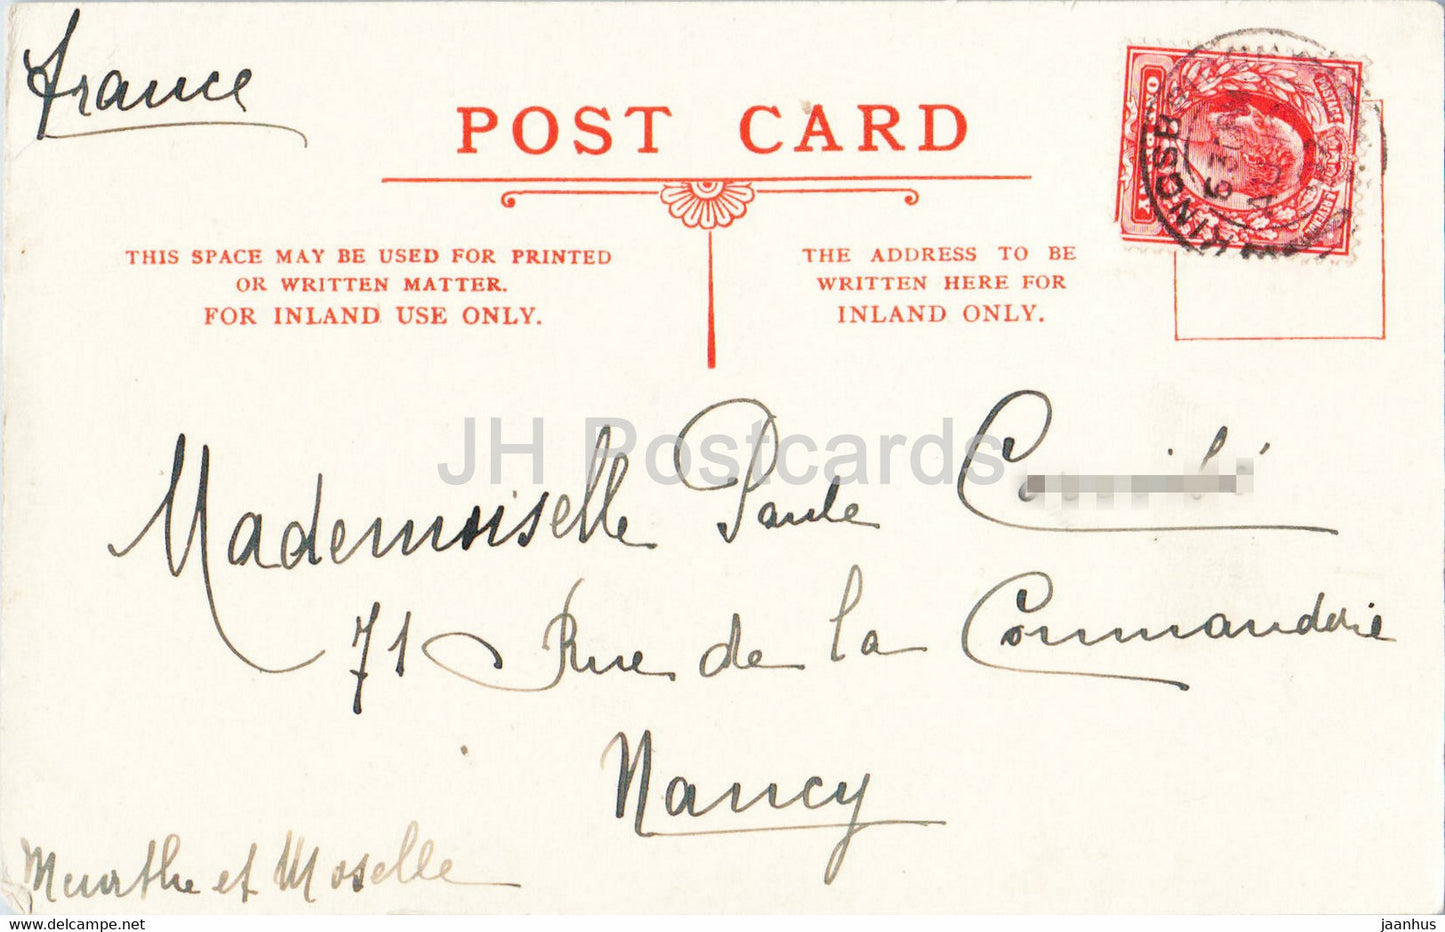 Kingsbridge Quay - Boot - Schiff - Dampfer - alte Postkarte - 1907 - England - Vereinigtes Königreich - gebraucht